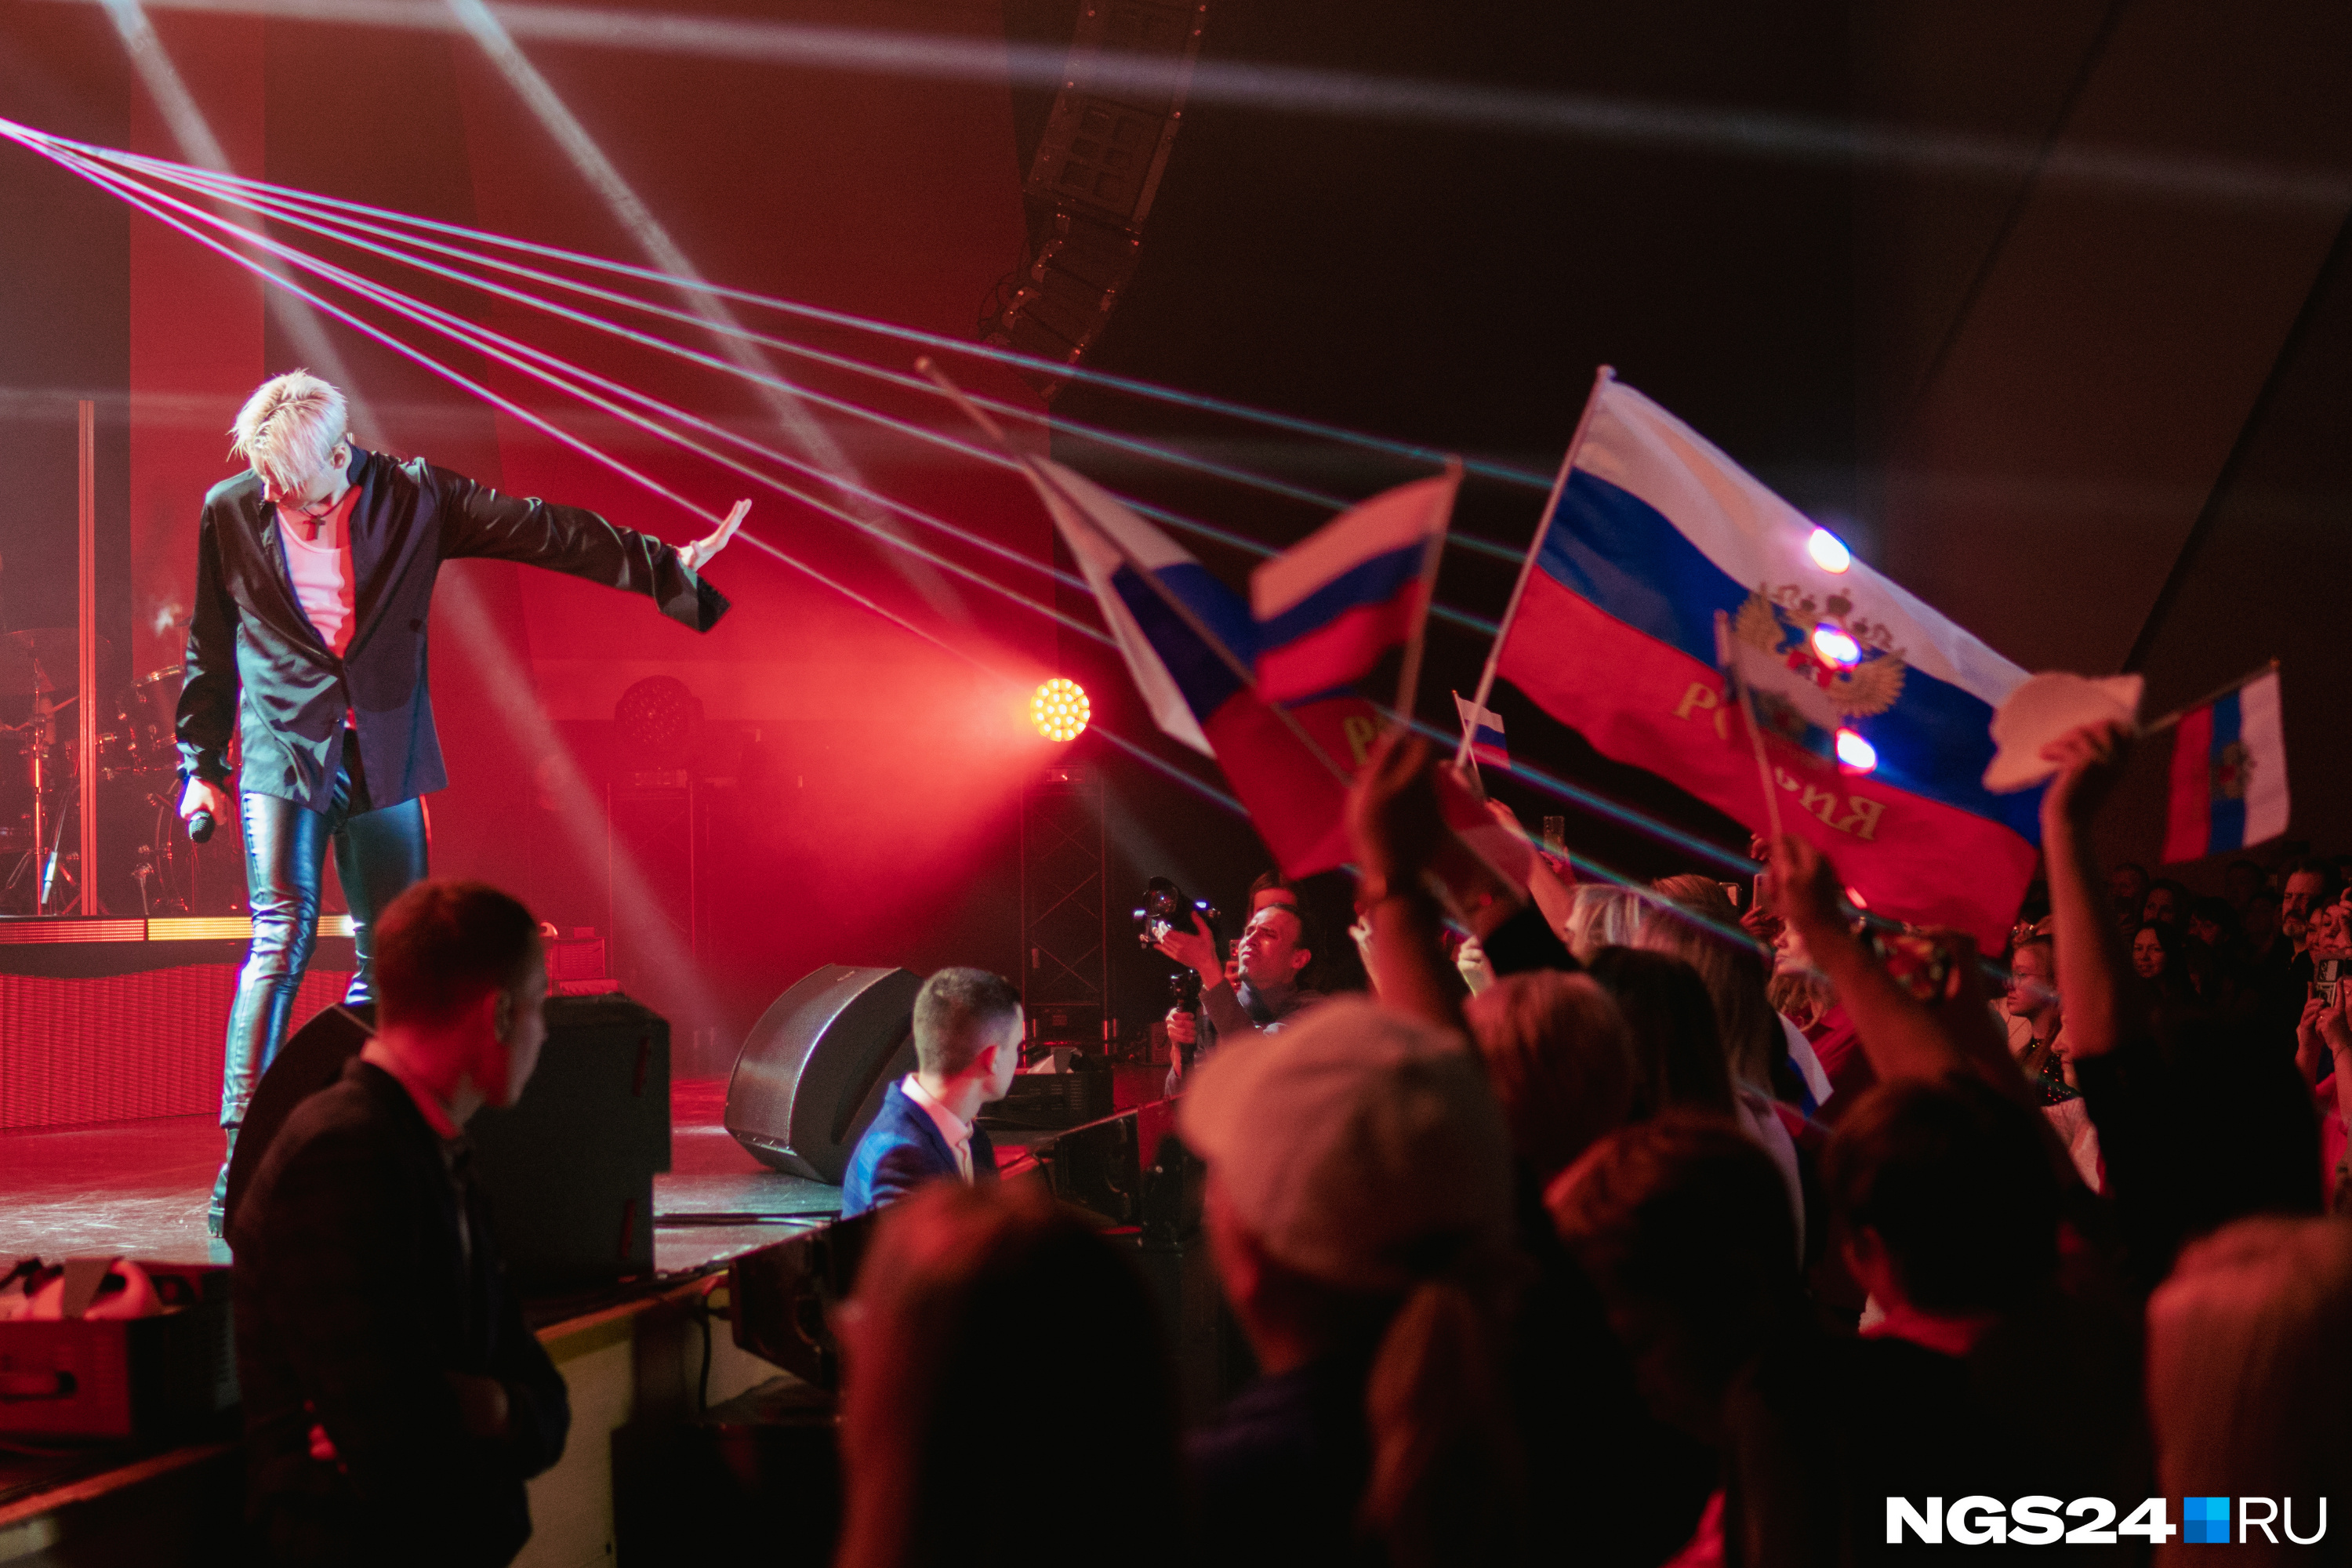 «Зарабатывает на патриотизме. Почему нет?»: SHAMAN в Красноярске сверкал ремнем из гильз, а зрителям дарили бумажные сердца